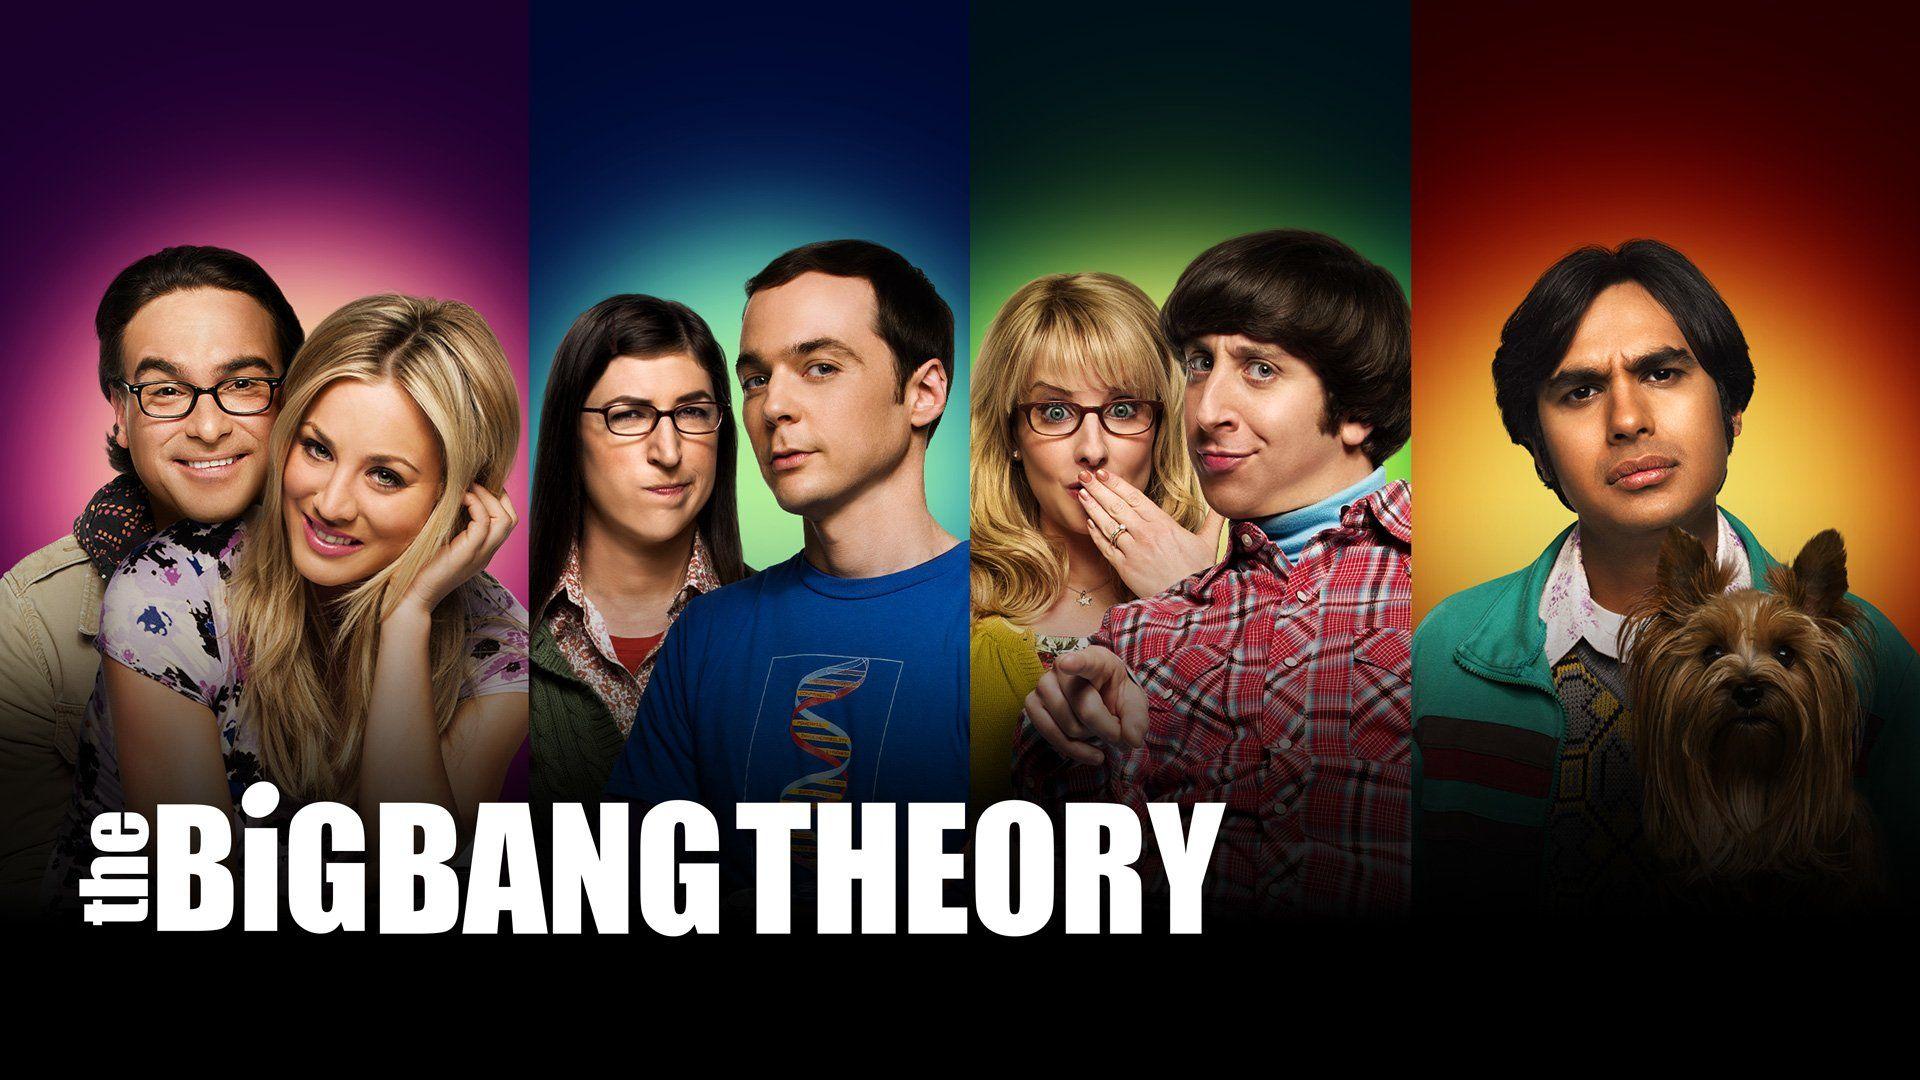 The Big Bang Theory Wallpaper 6 X 1080